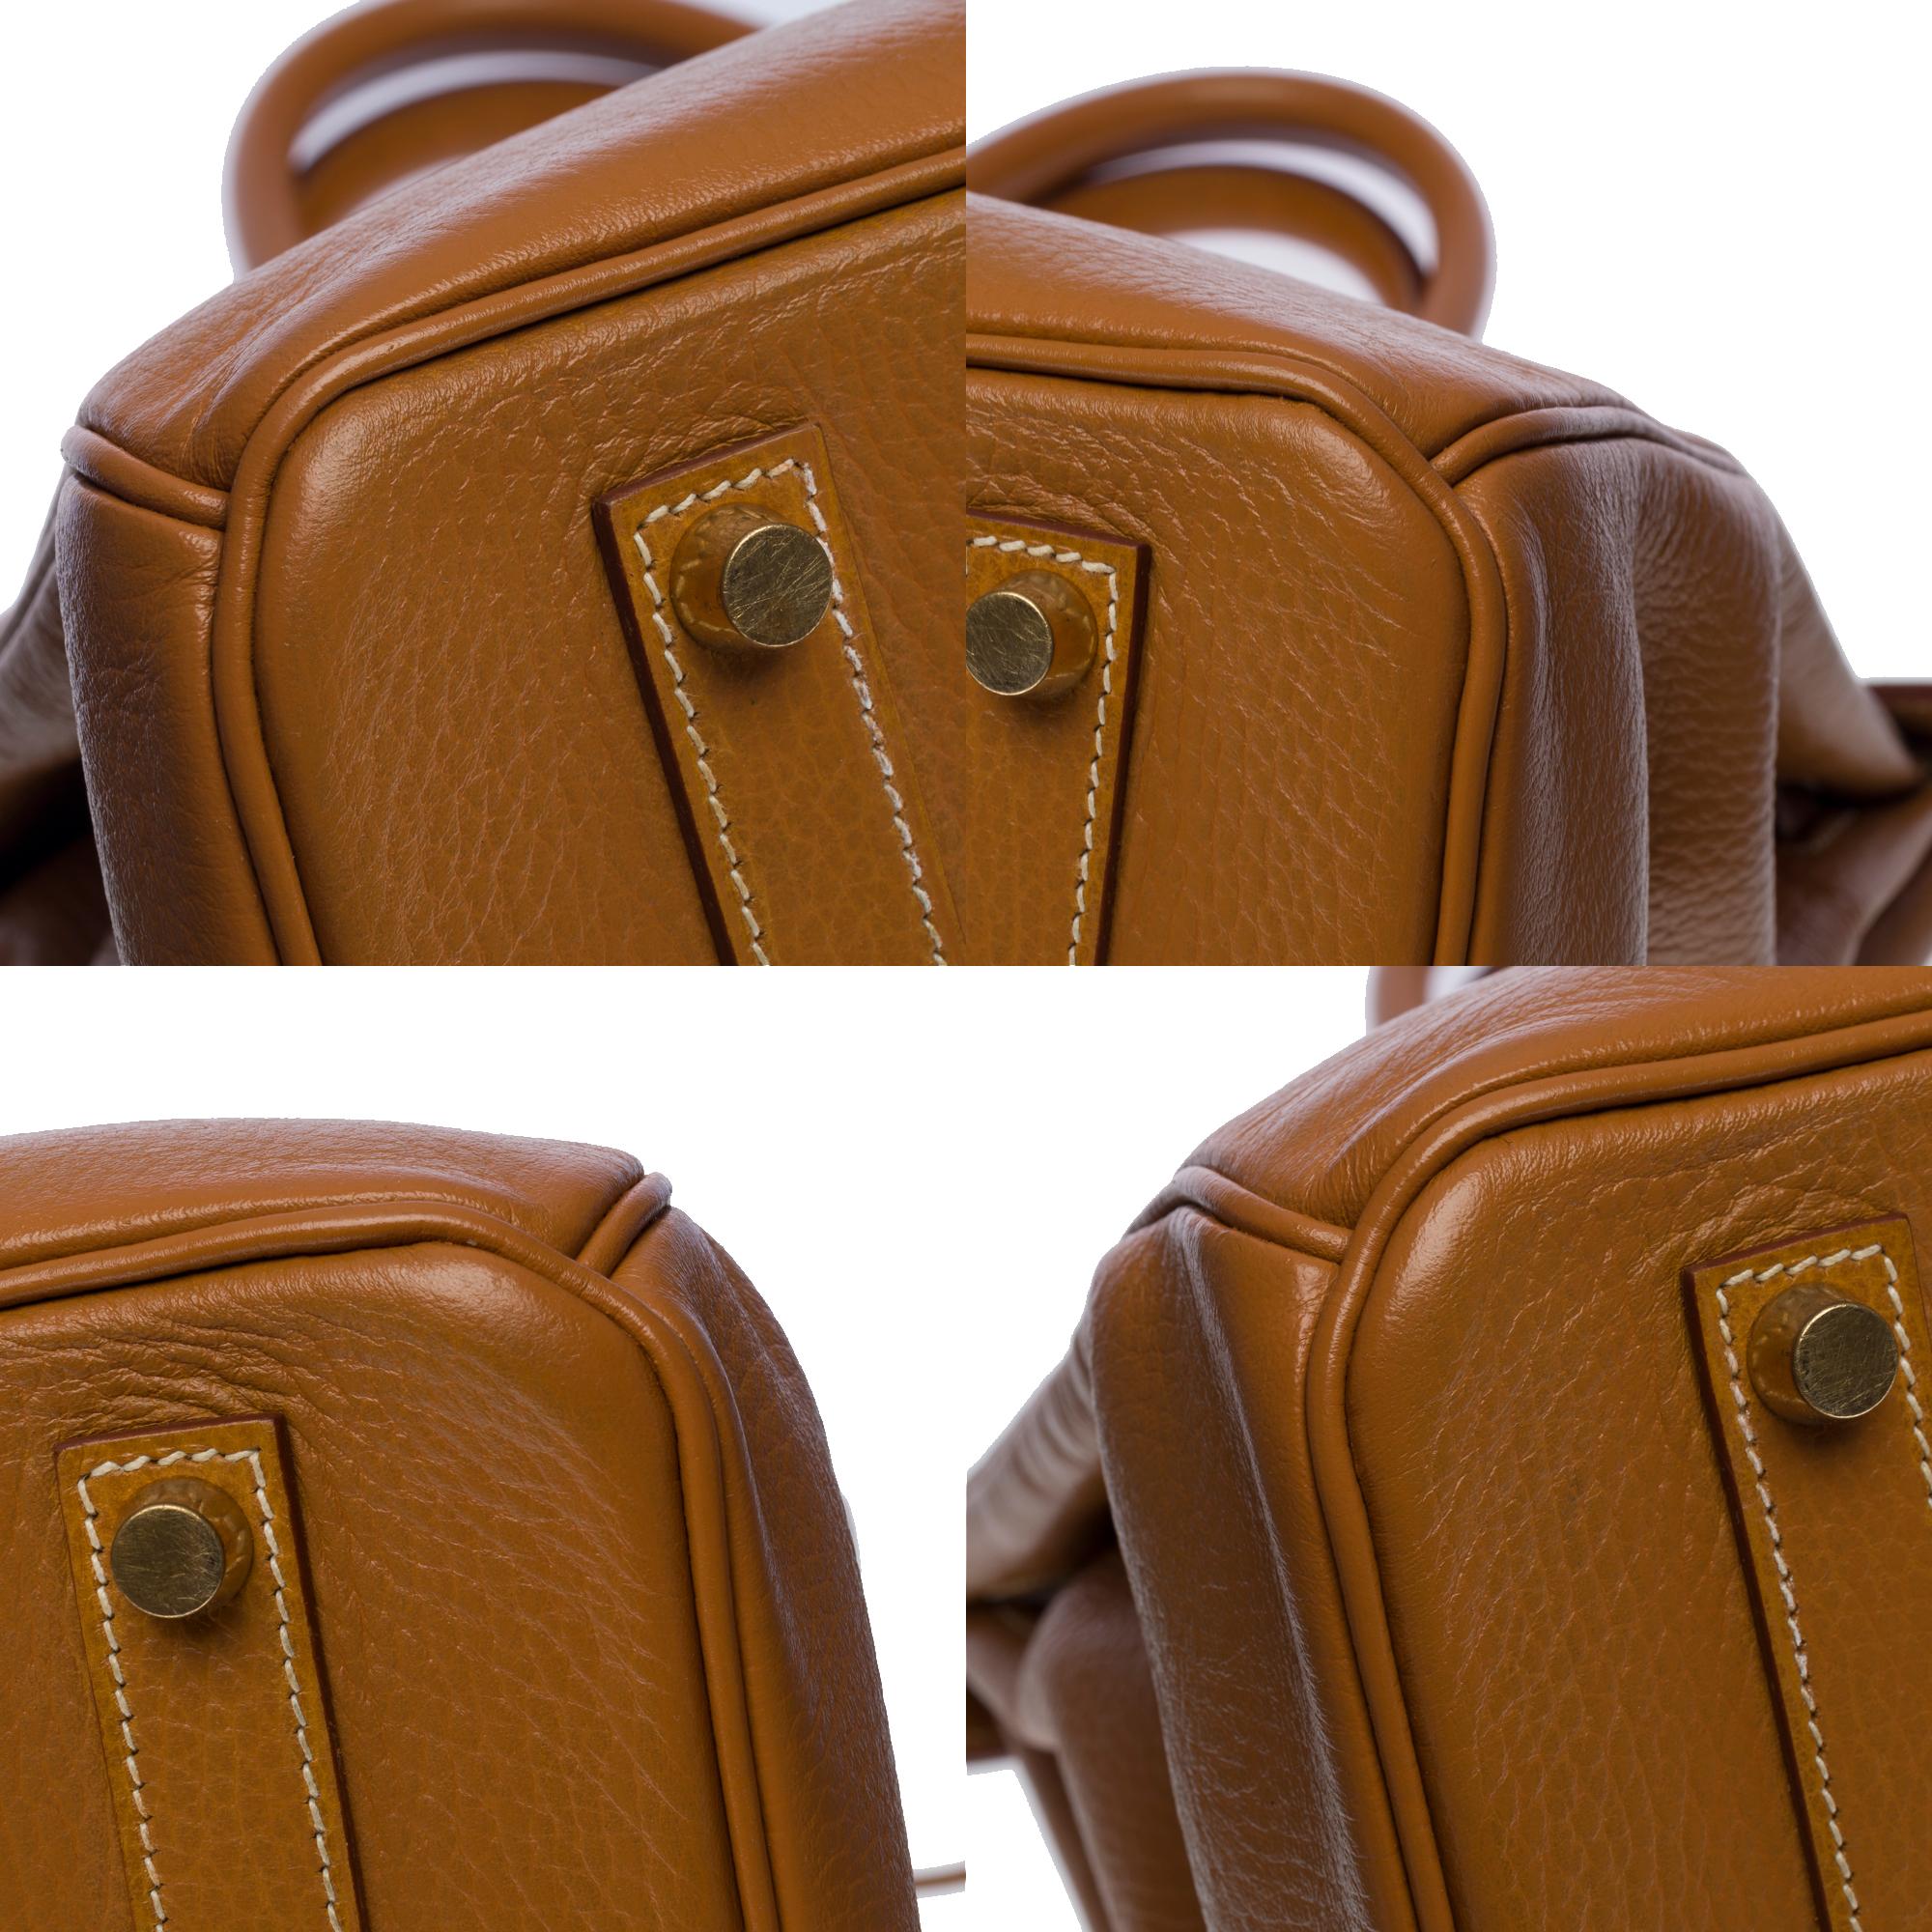 Amazing Hermès Birkin 35 handbag in Gold Vache Ardennes leather, GHW 5